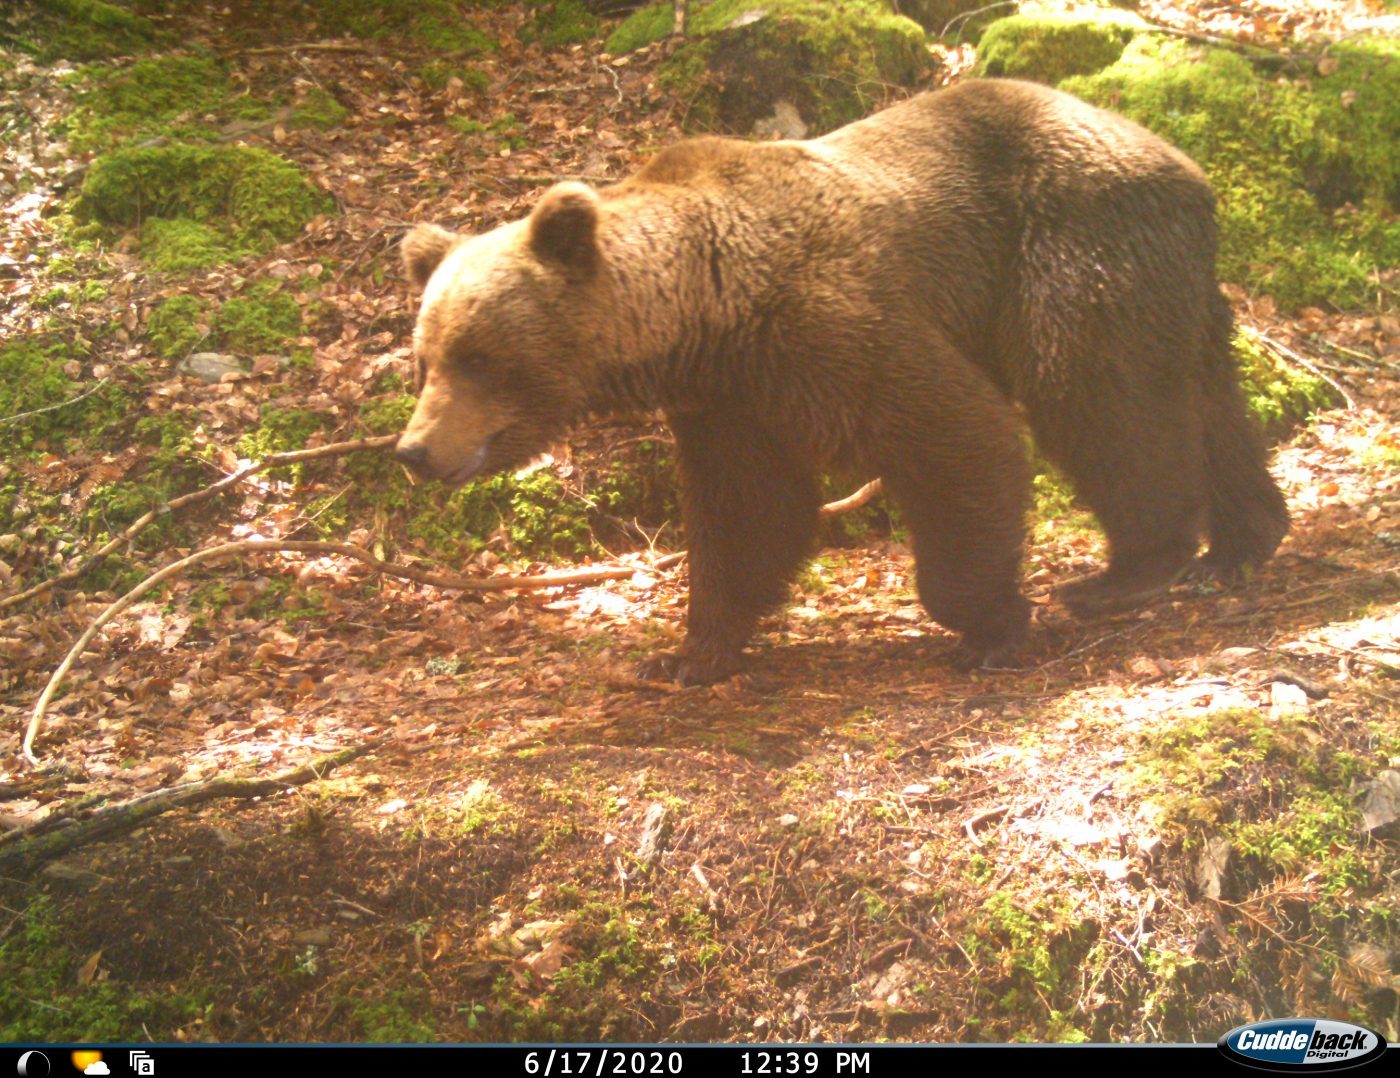 La population d'ours continue d'augmenter avec 70 spécimens recensés dans  les Pyrénées - Le Parisien